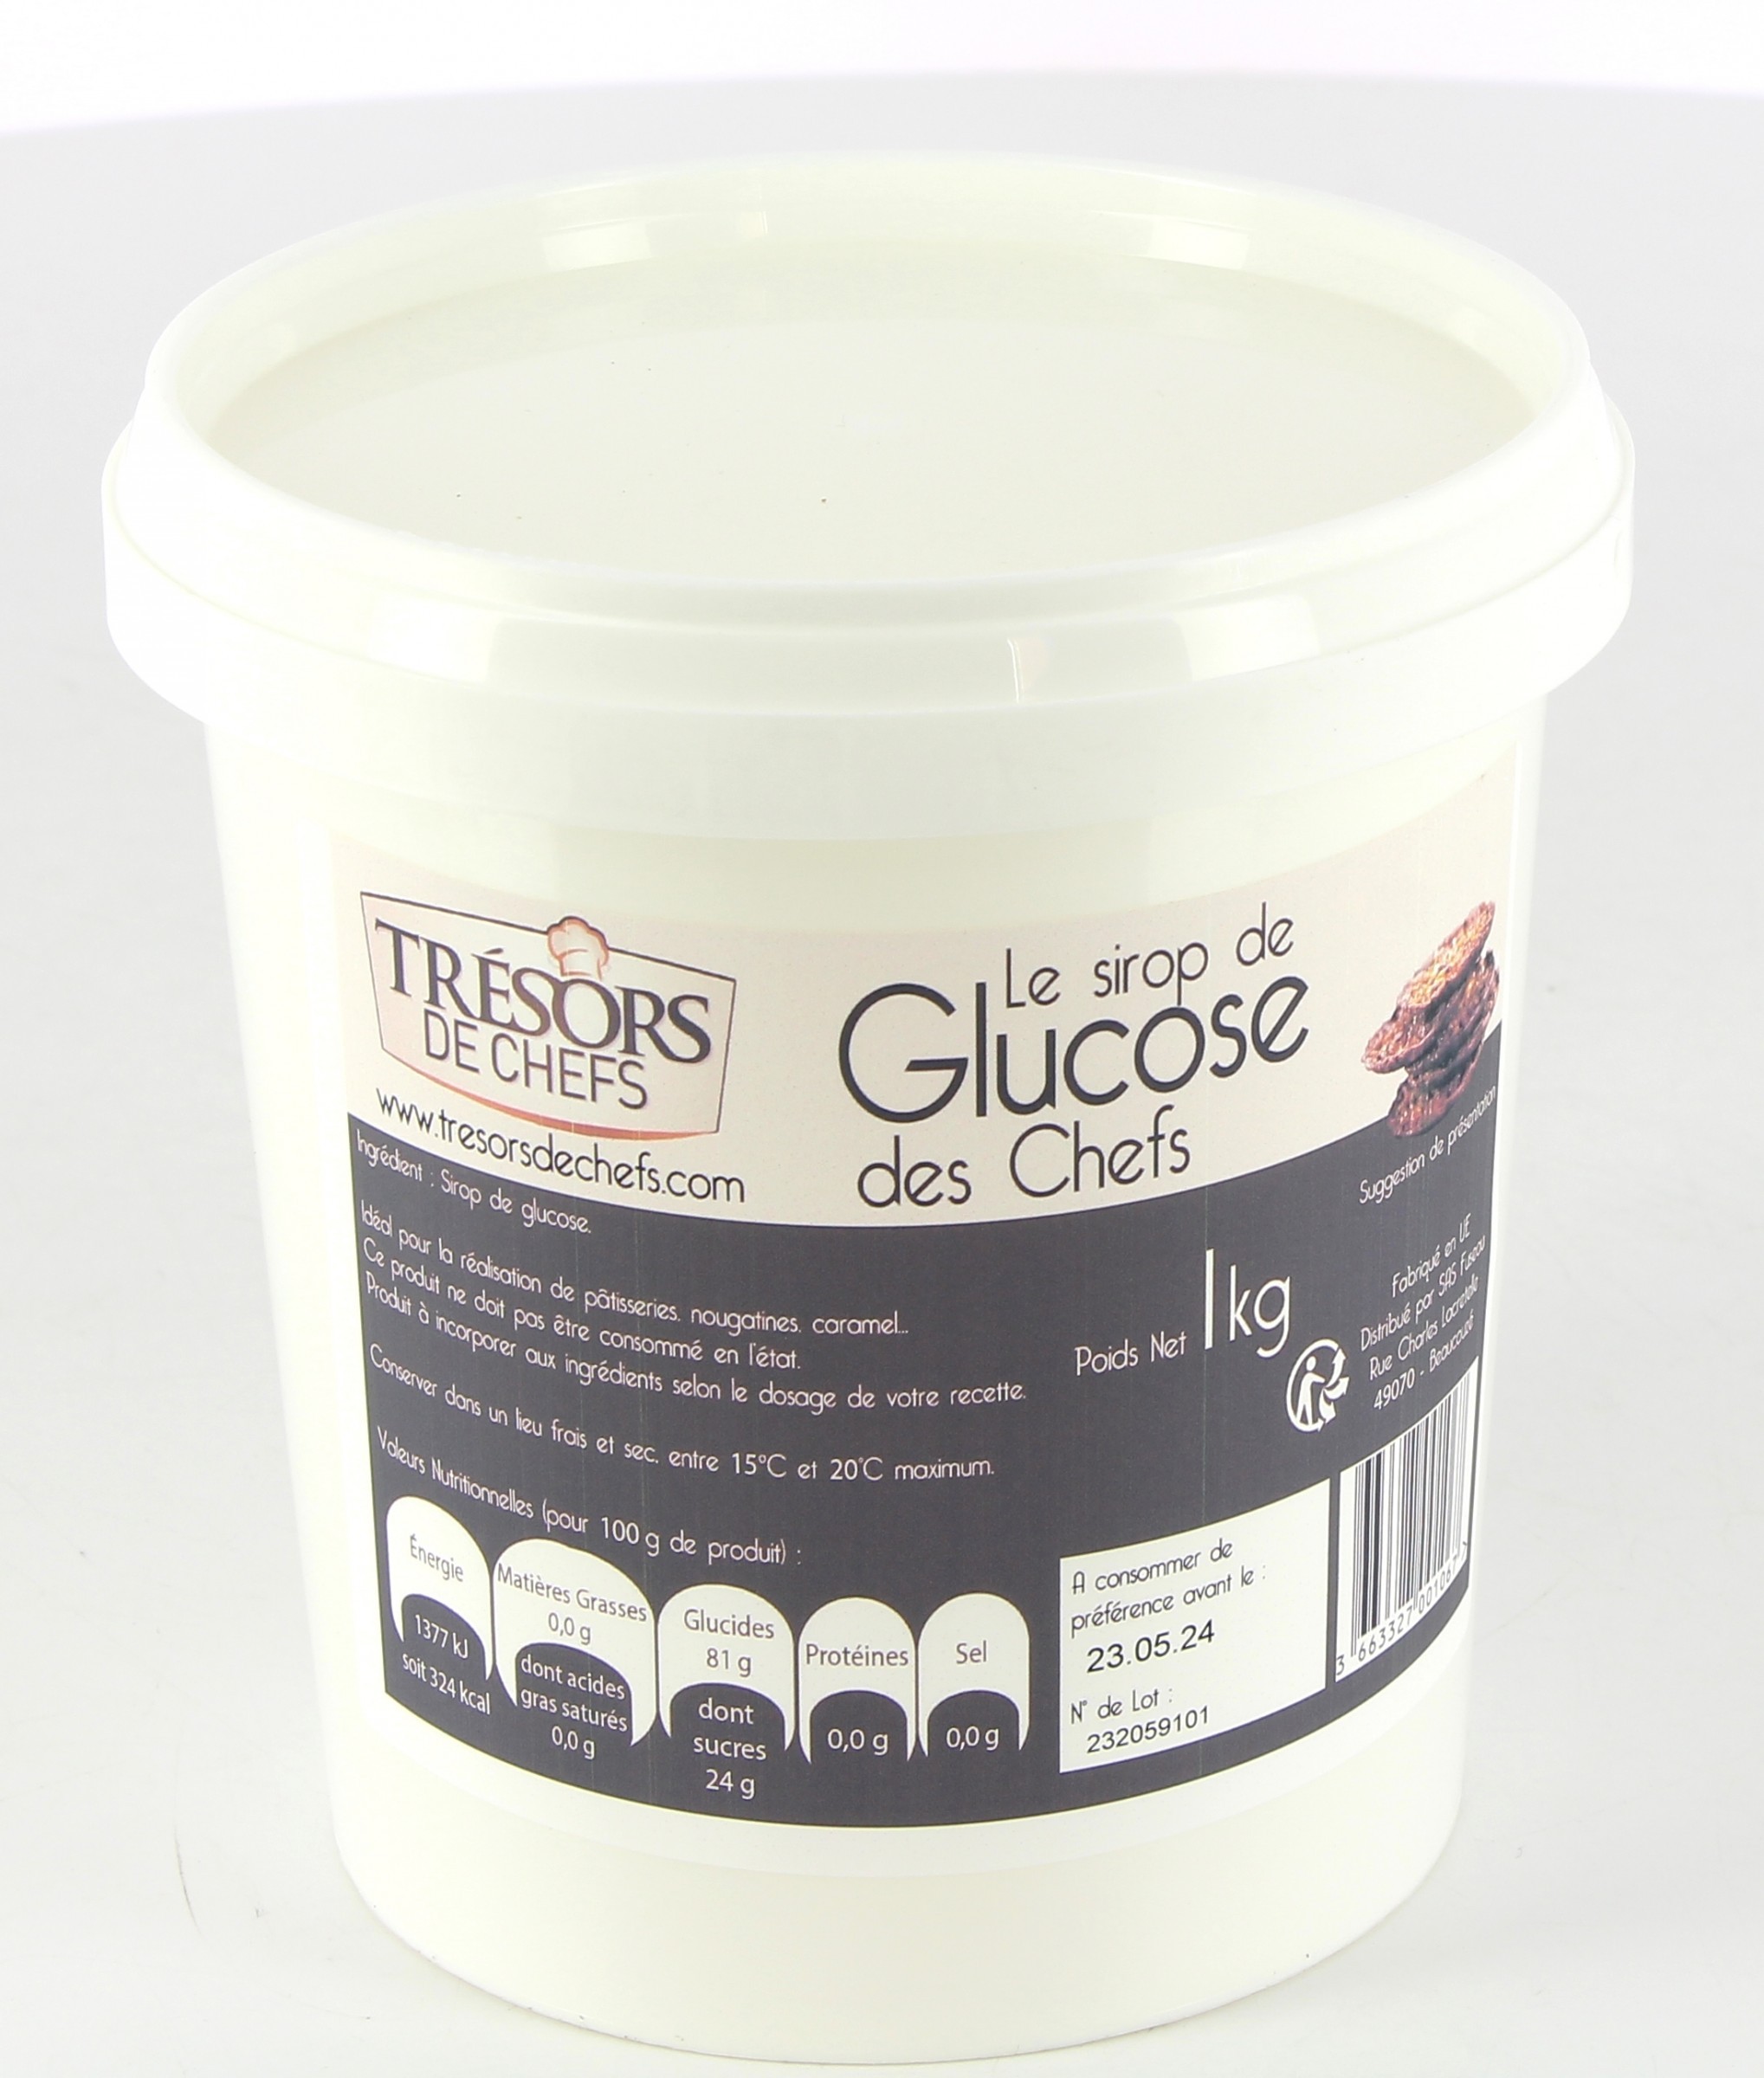 Sirop de glucose bio en pot 300 g - Patisdécor Bio